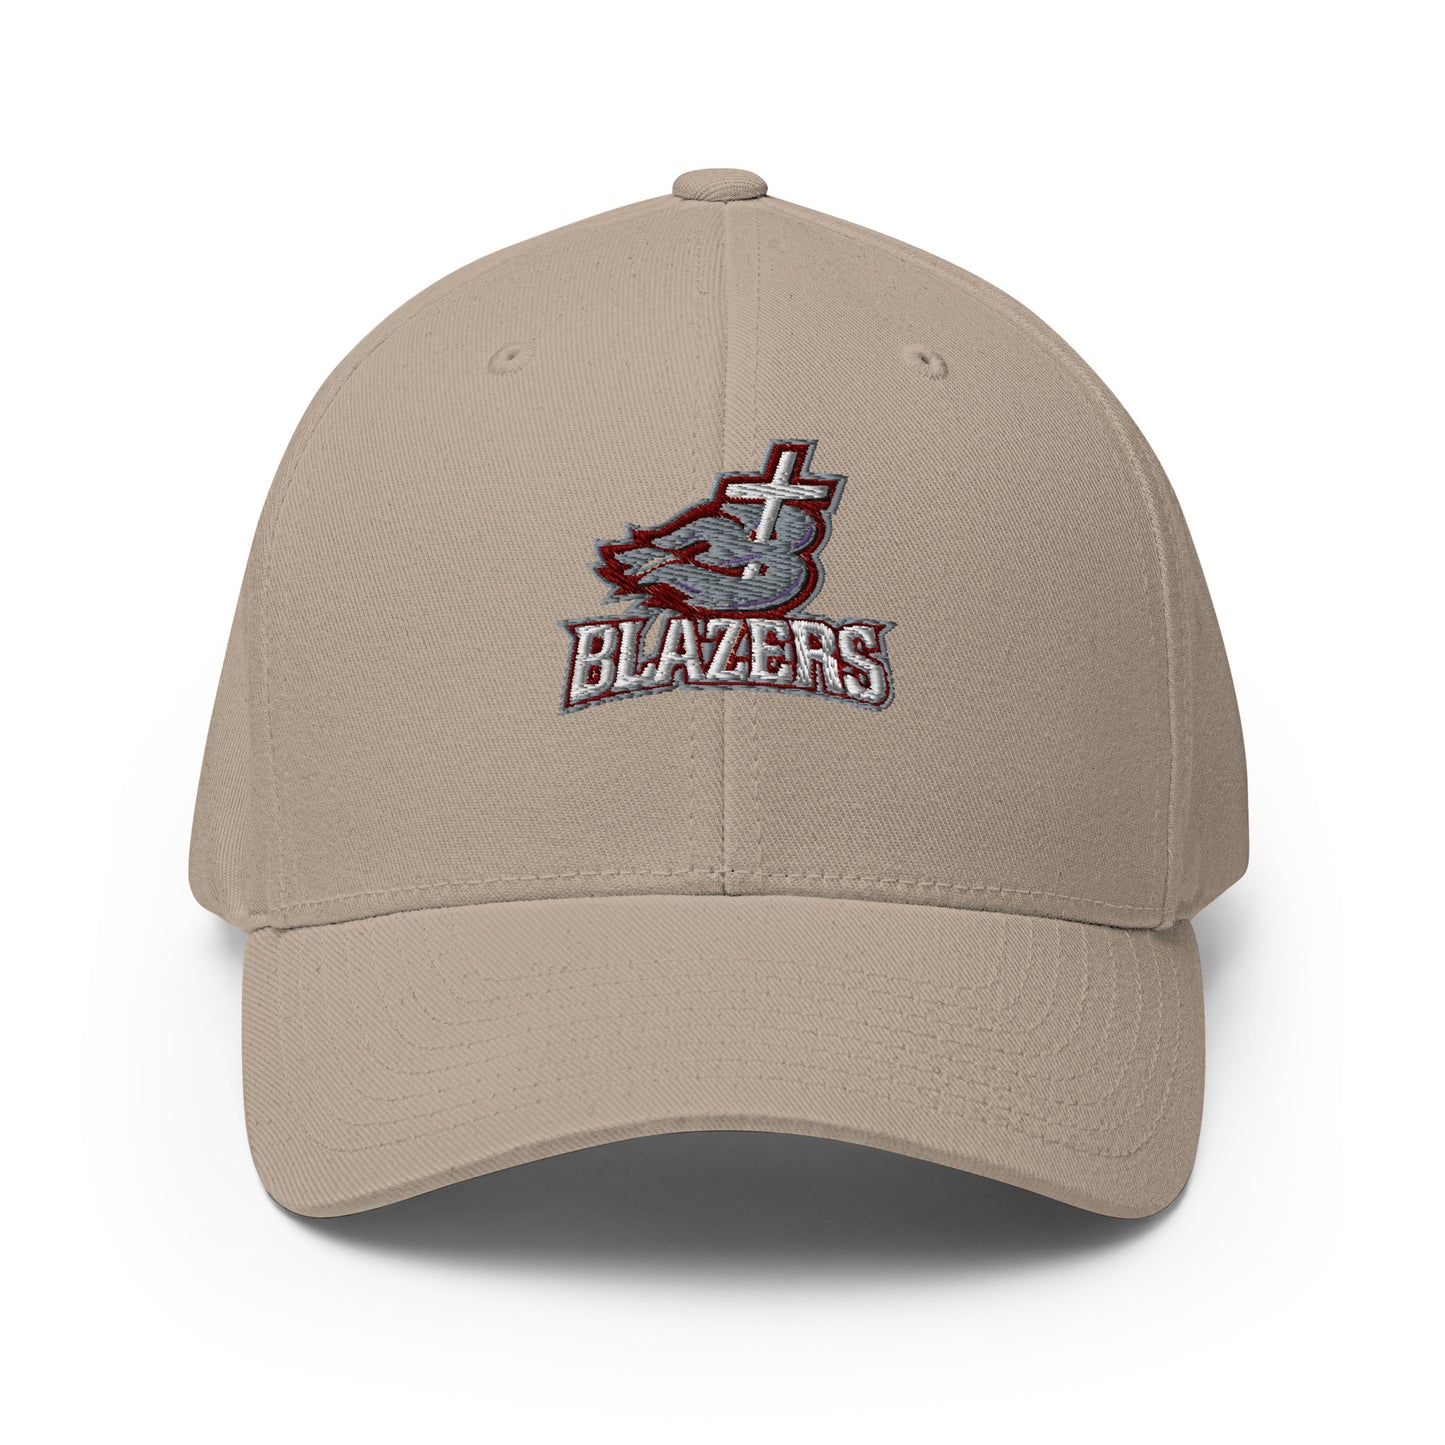 Blazers Flexfit Structured Twill Cap